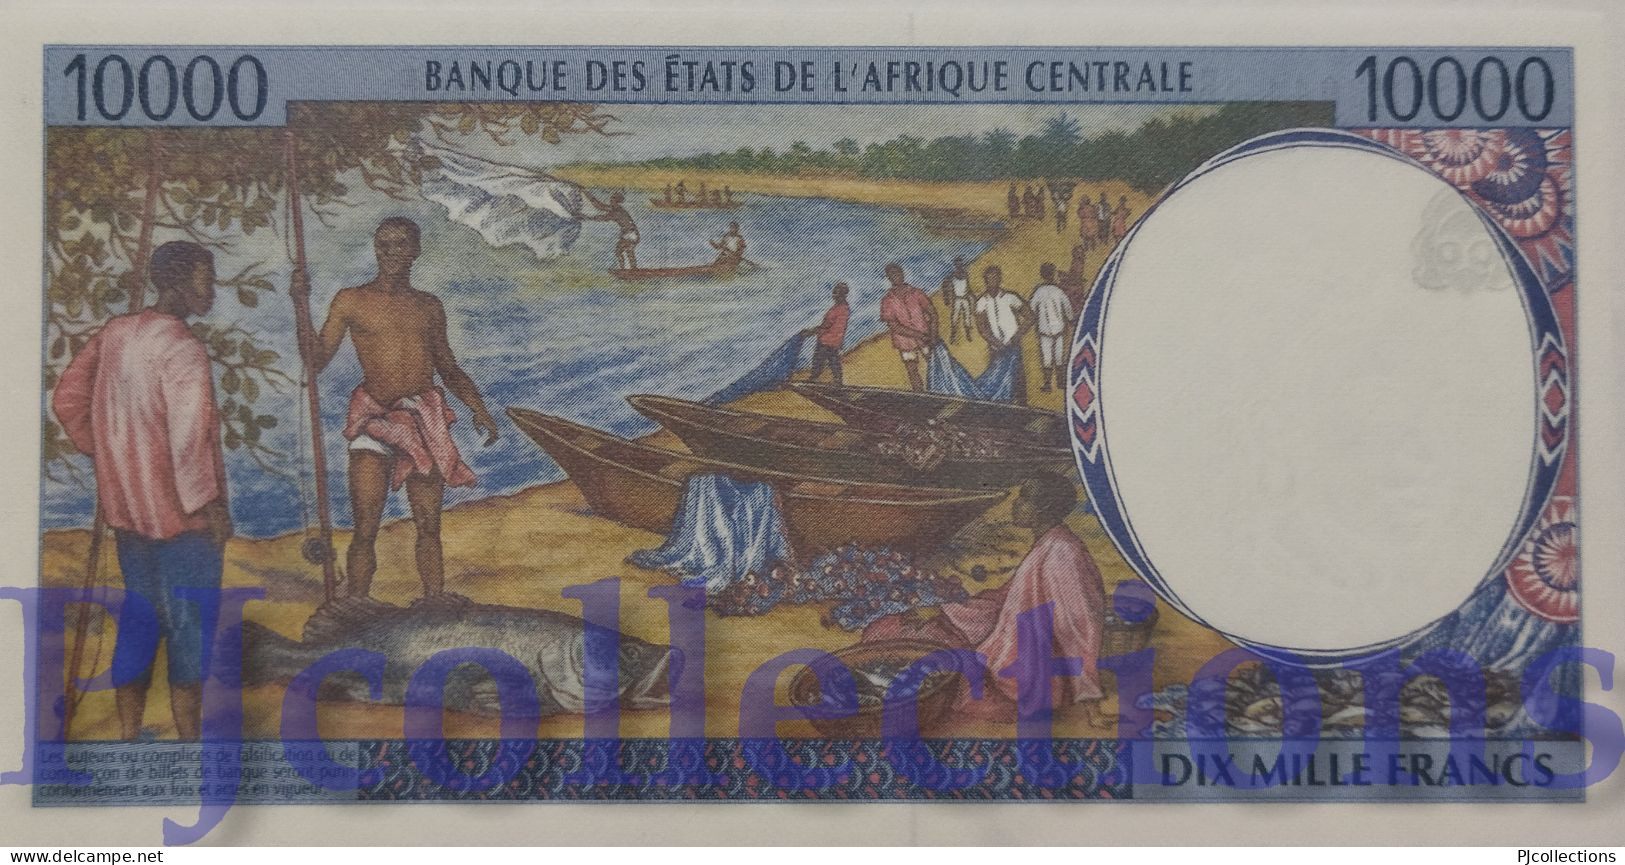 CENTRAL AFRICAN STATES 10000 FRANCS 2000 PICK 105Cf UNC - Centrafricaine (République)